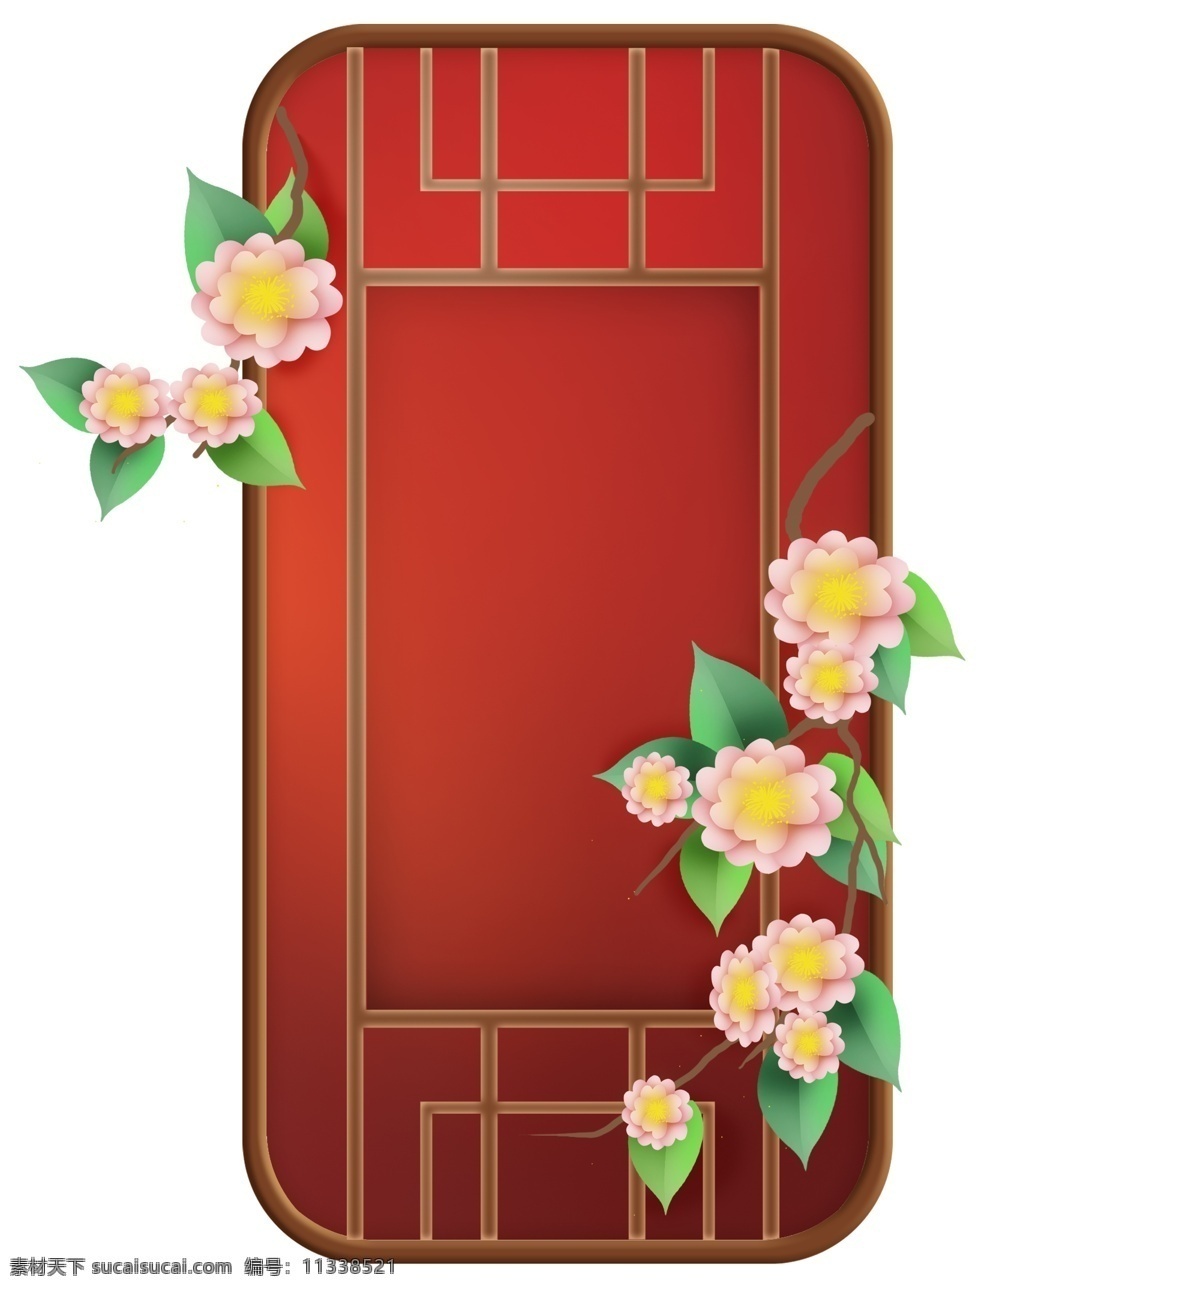 红色 窗子 花卉 中式 婚礼 装饰 婚礼装饰 窗外 春天 红色窗格 喜庆 中国风 春季 窗格 古风 花朵 婚庆